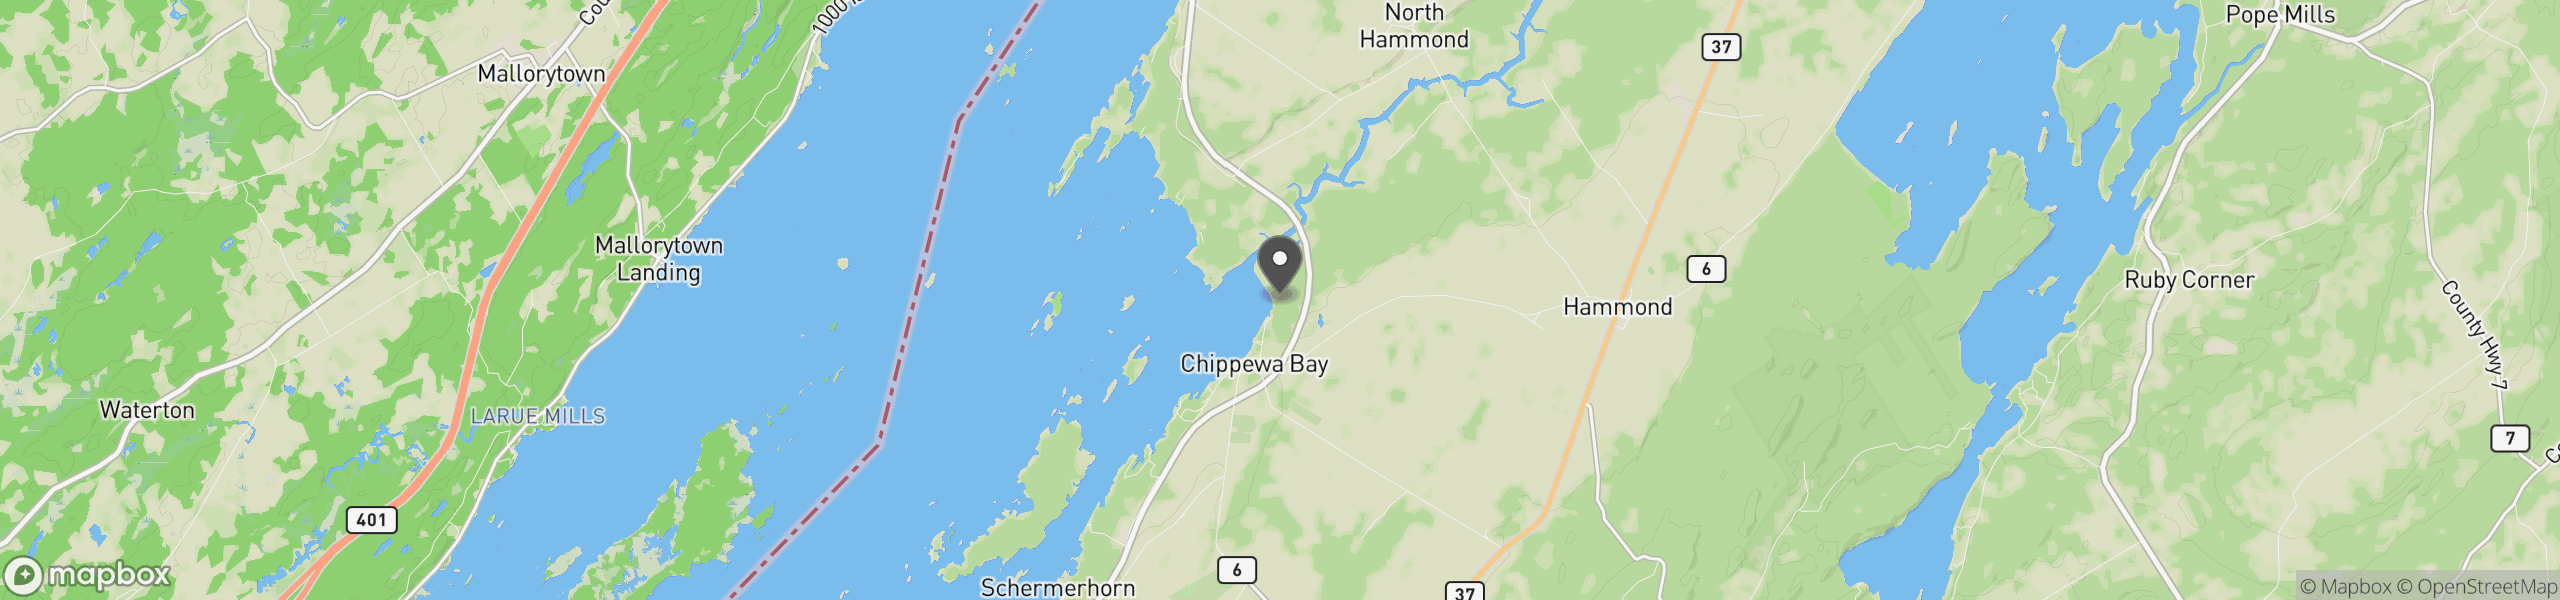 Chippewa Bay, NY 13623